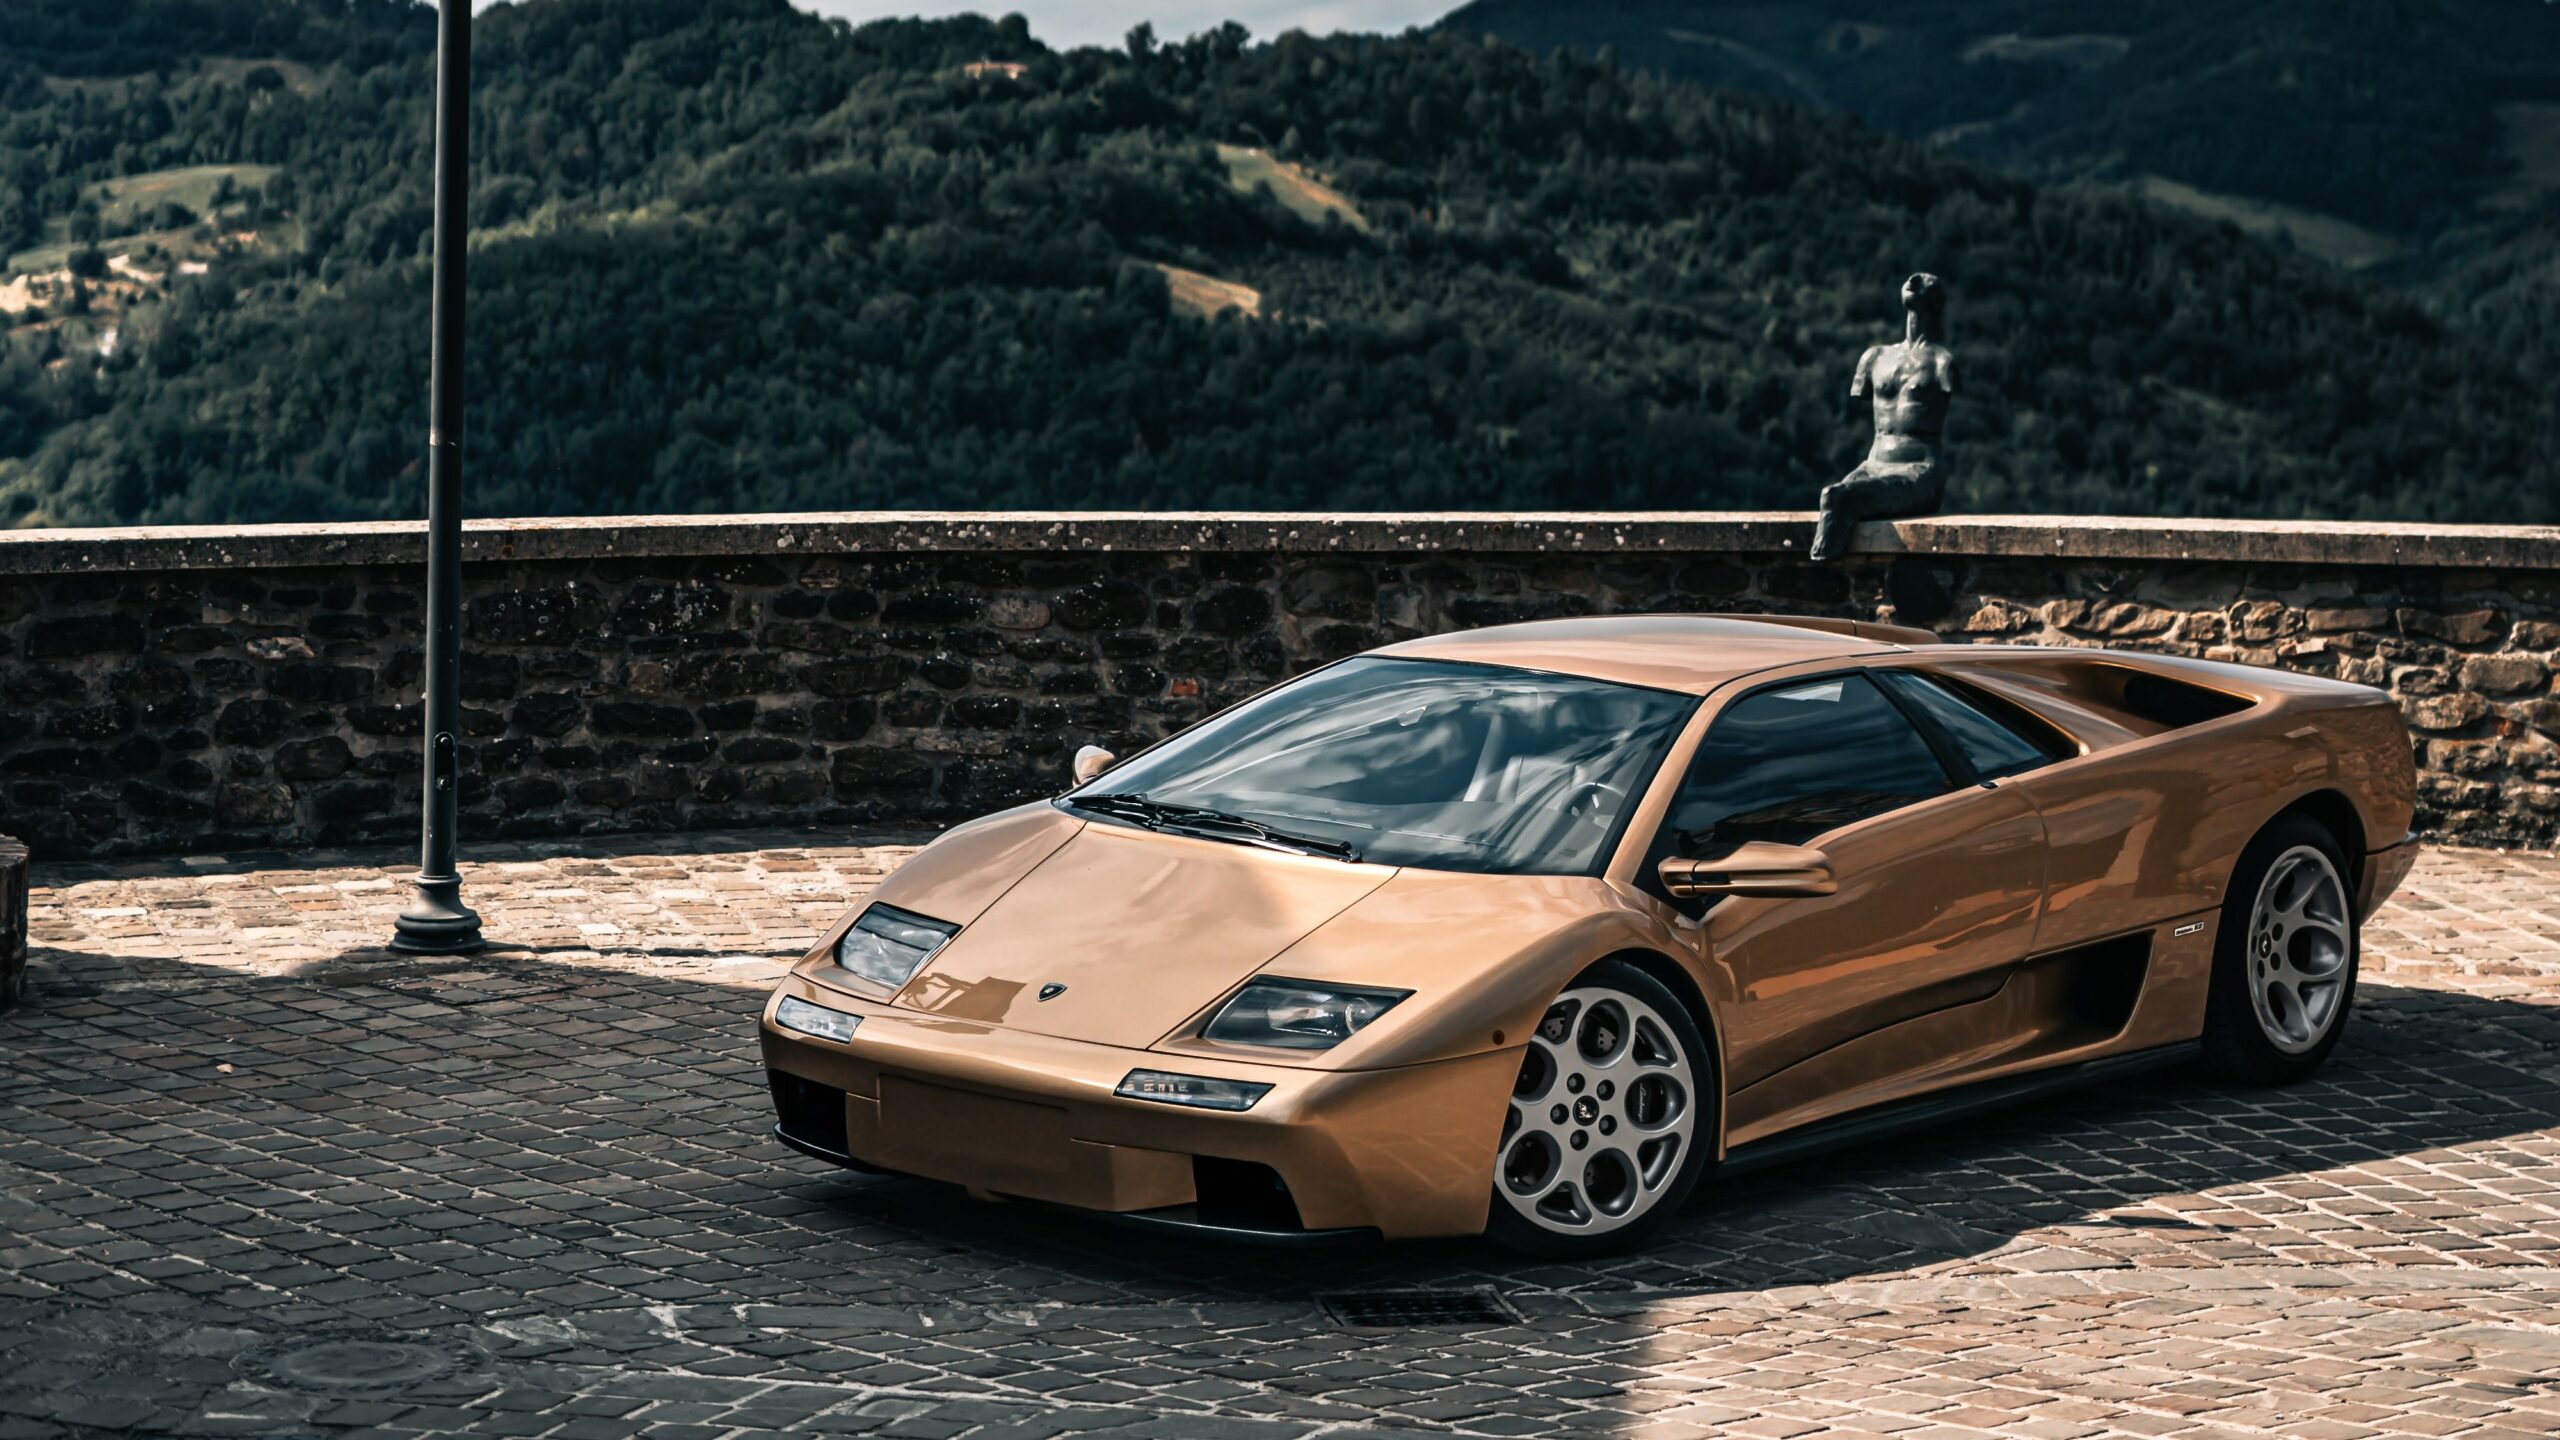 Icon: The Lamborghini Diablo